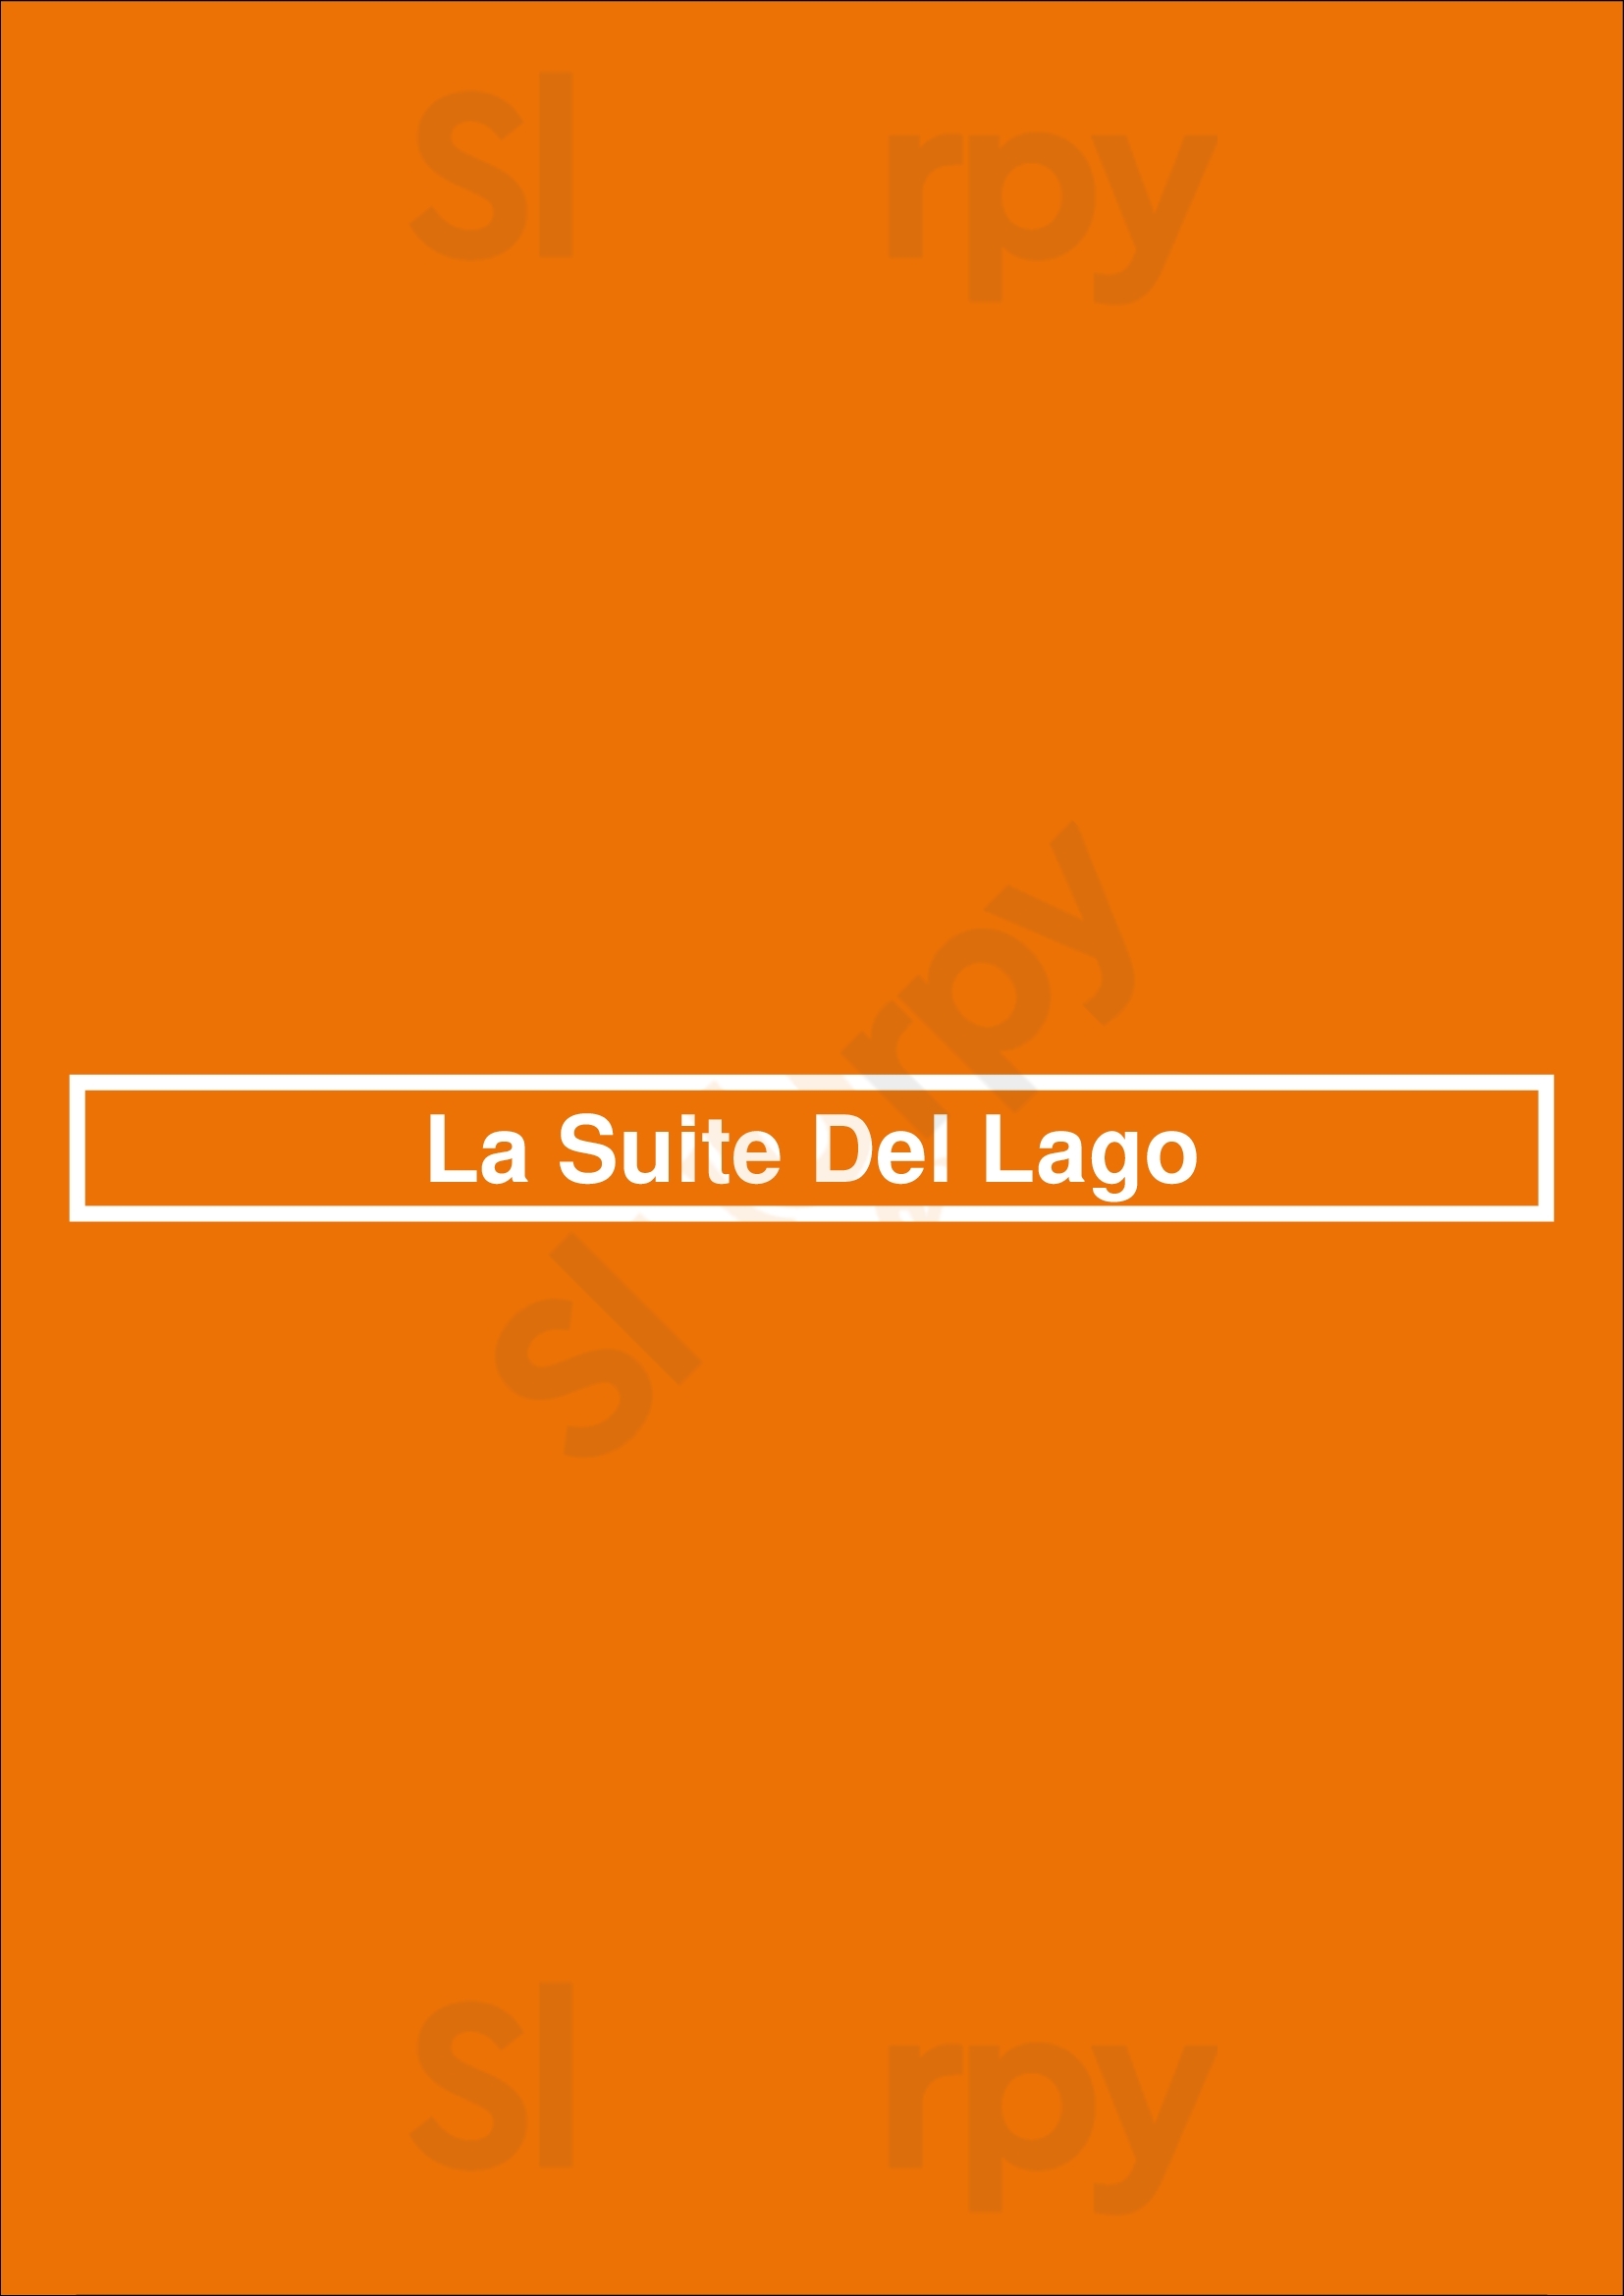 La Suite Del Lago Pinto Menu - 1